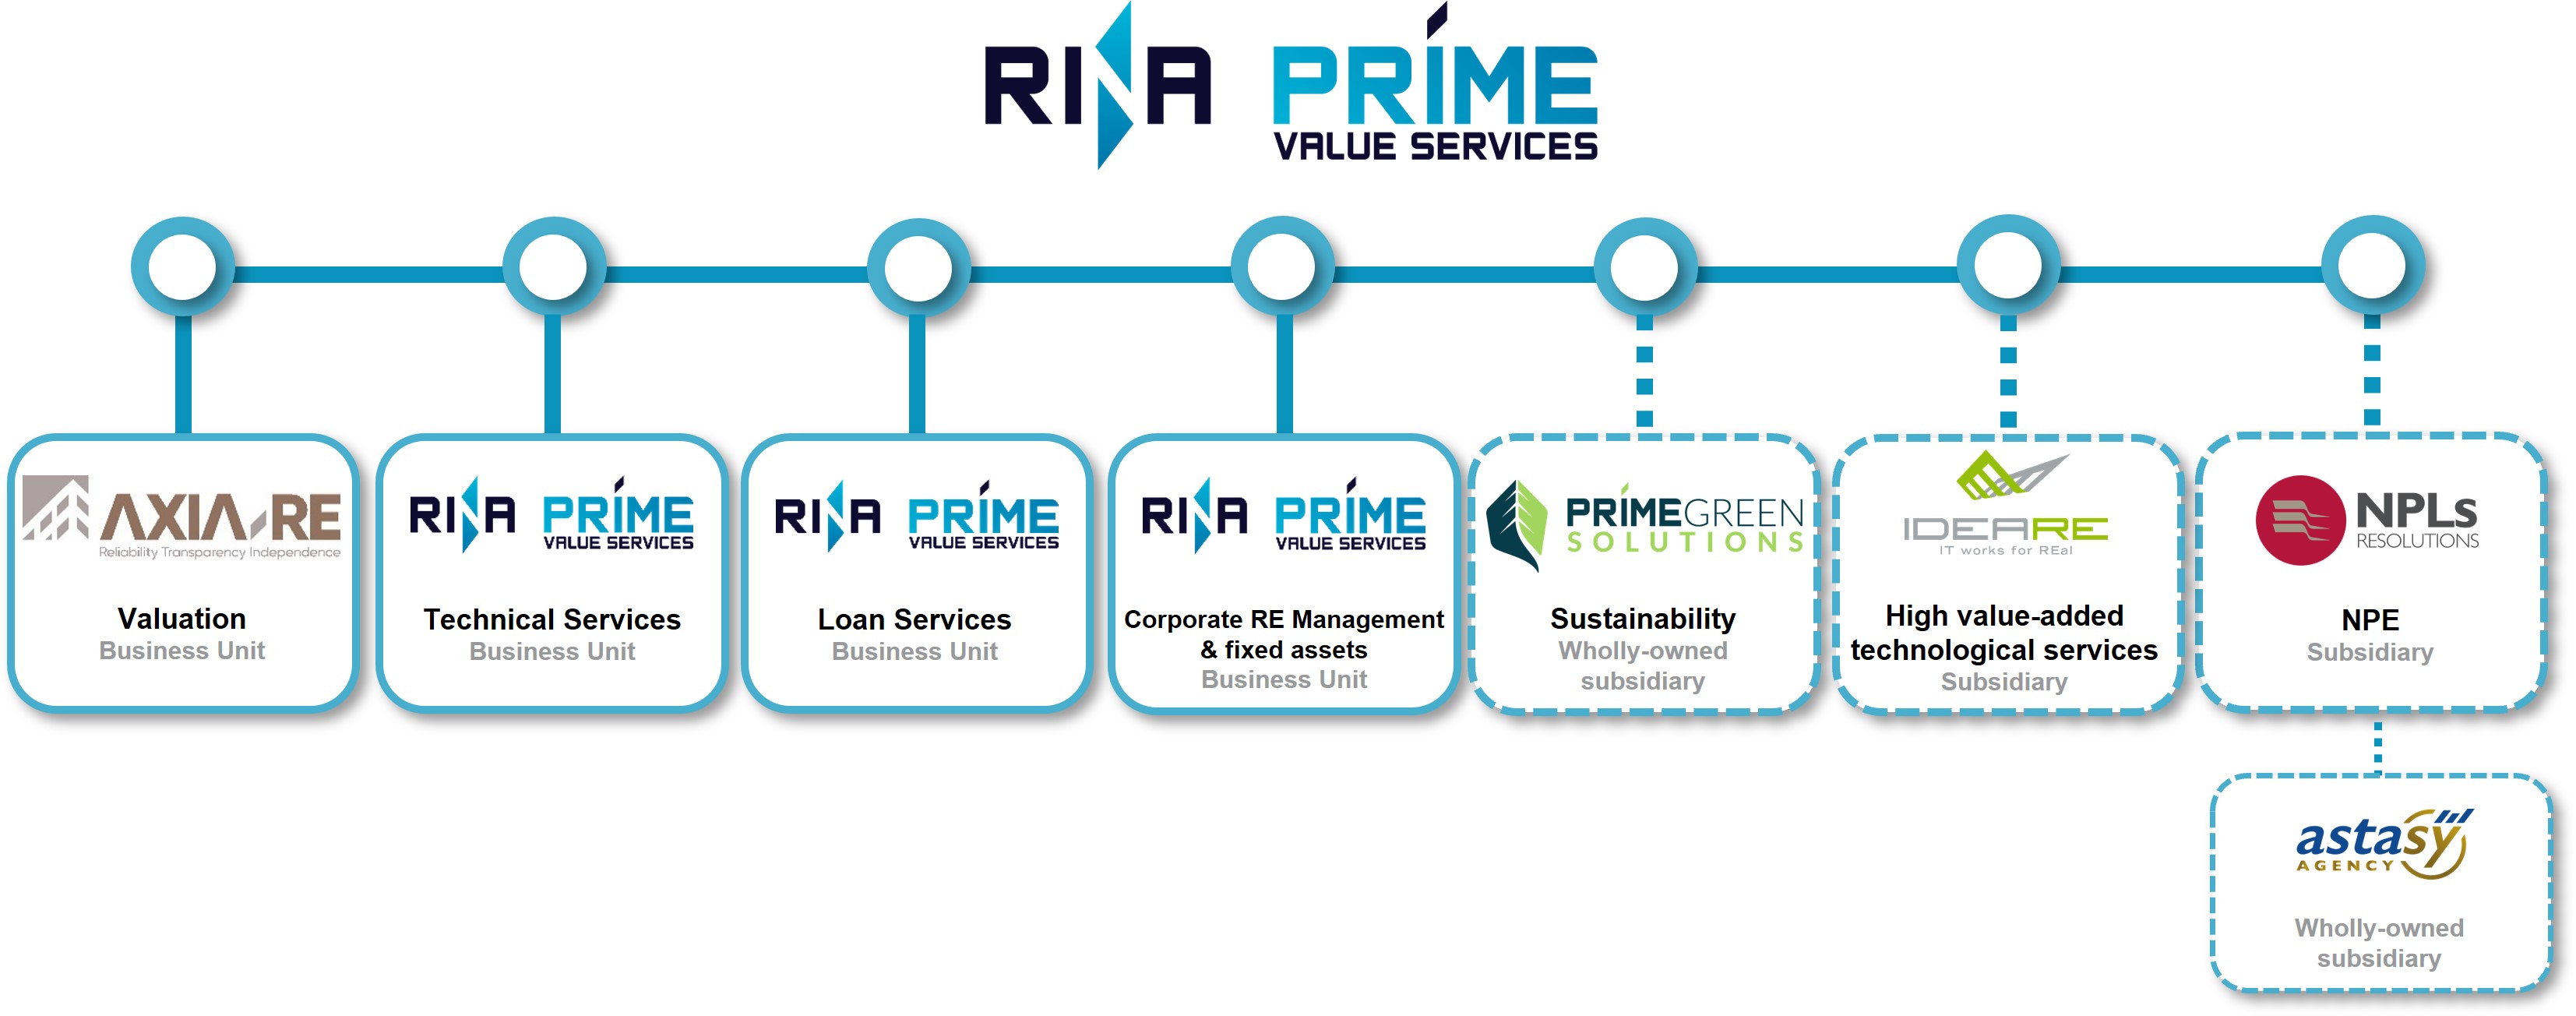 RINA Prime Value Services 